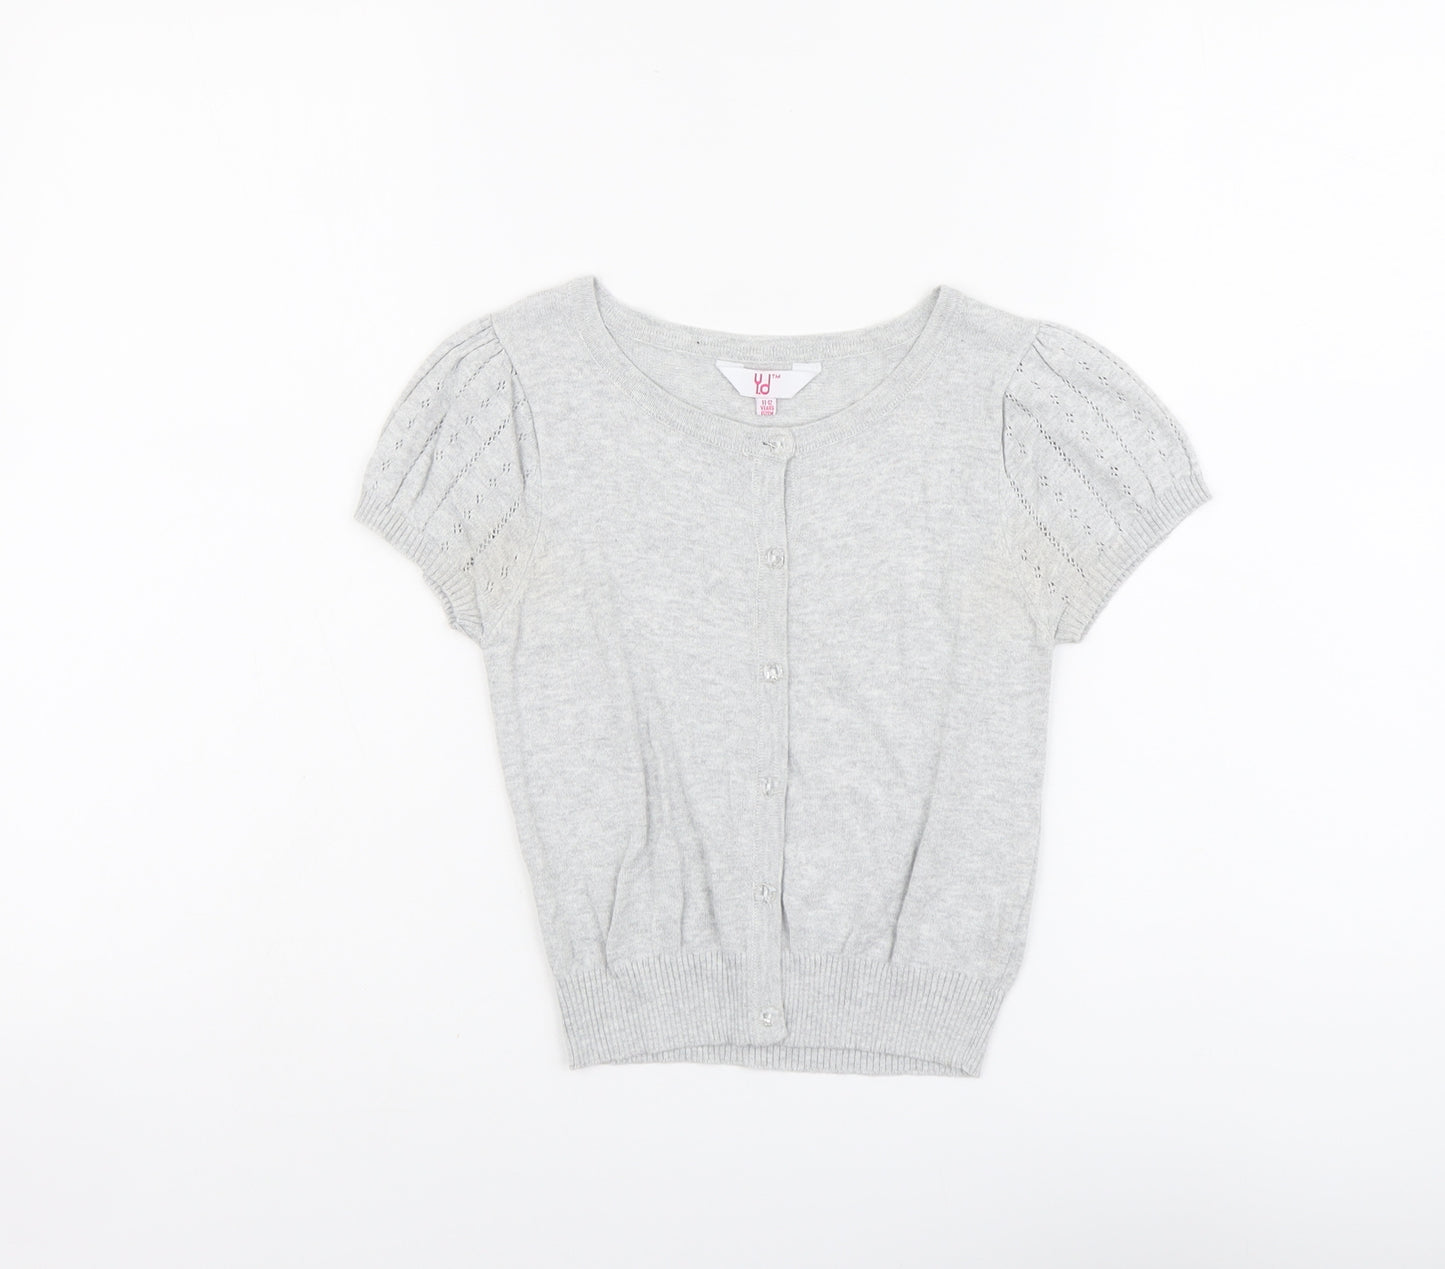 YD Girls Grey Round Neck Cotton Cardigan Jumper Size 11-12 Years Button